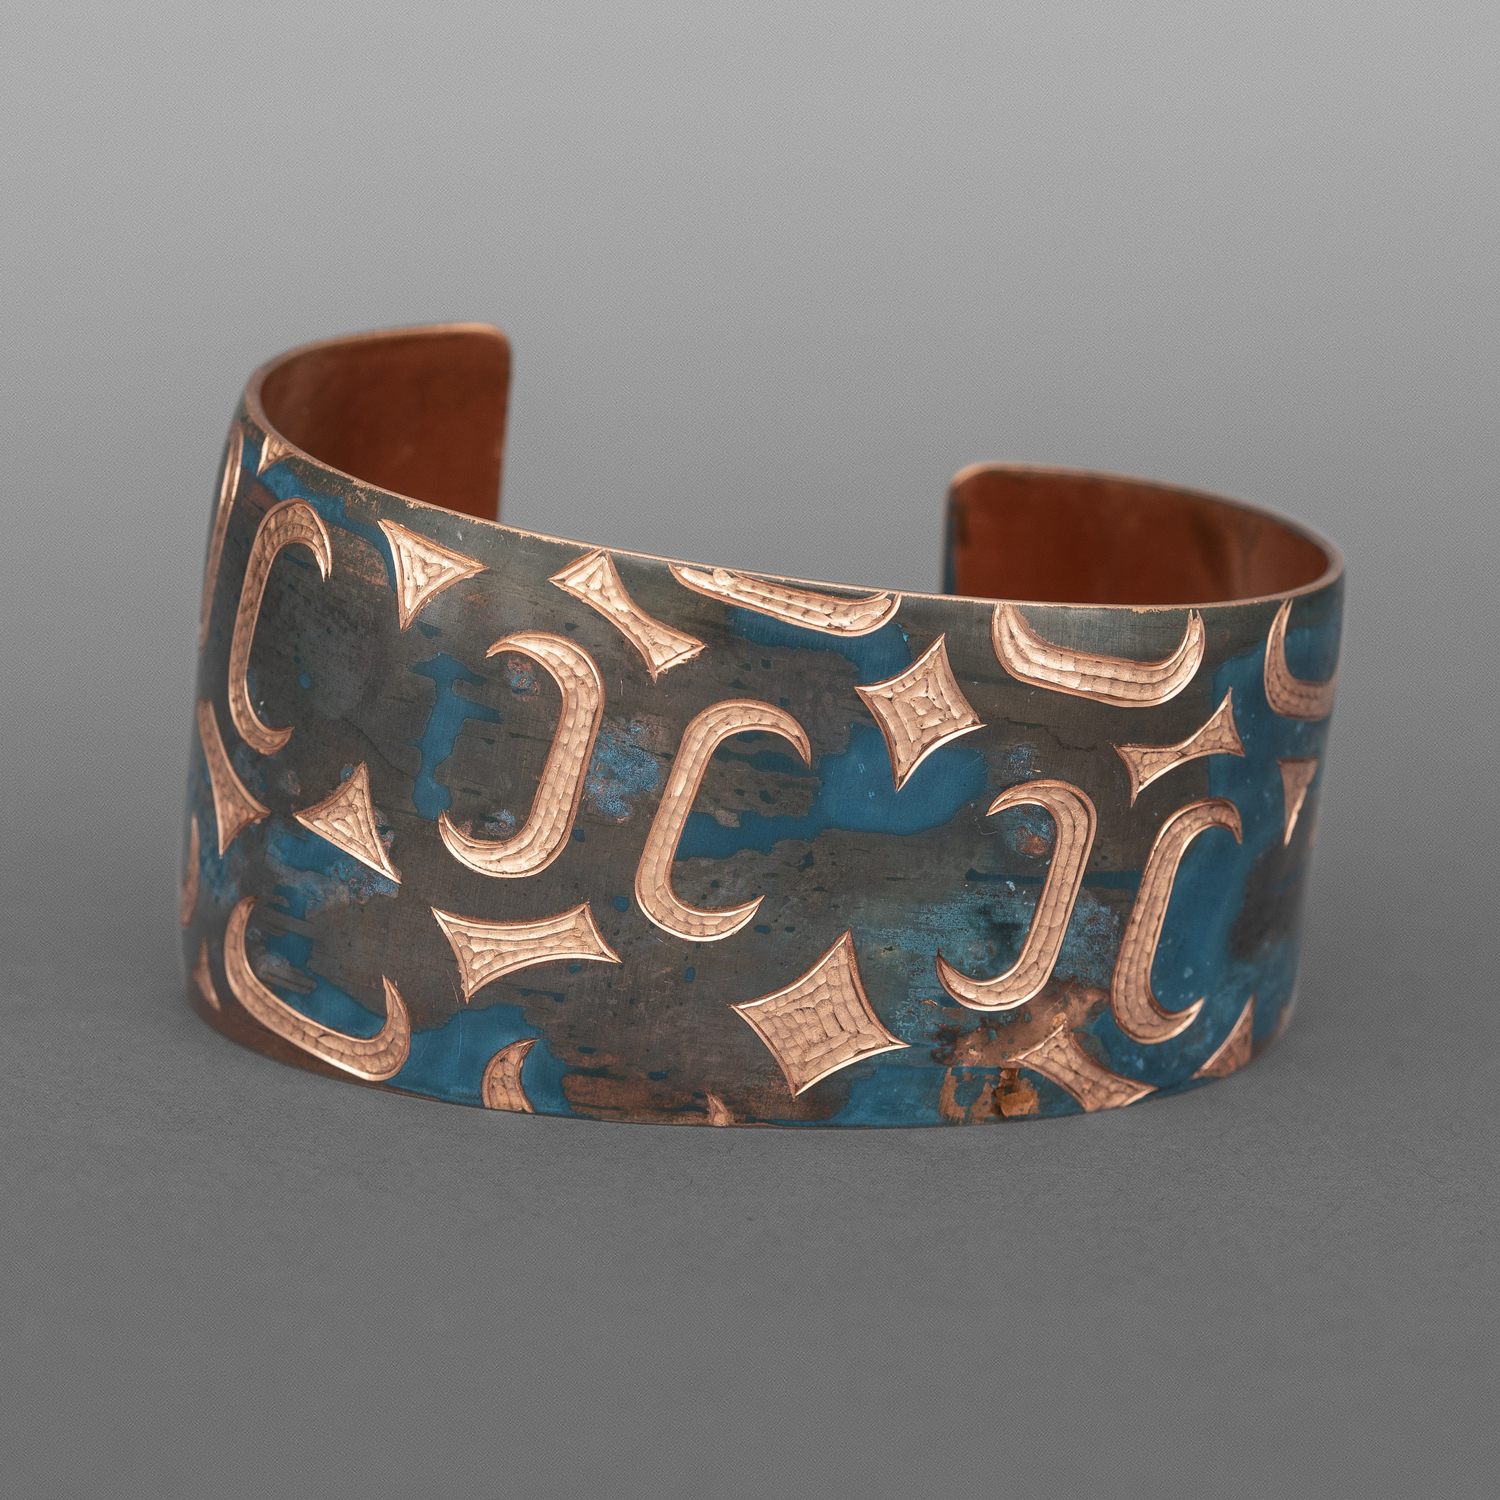 Monogrammed Ovoid Bracelet
Jennifer Younger
Tlingit
Patinated copper
6"x 1½”
$550